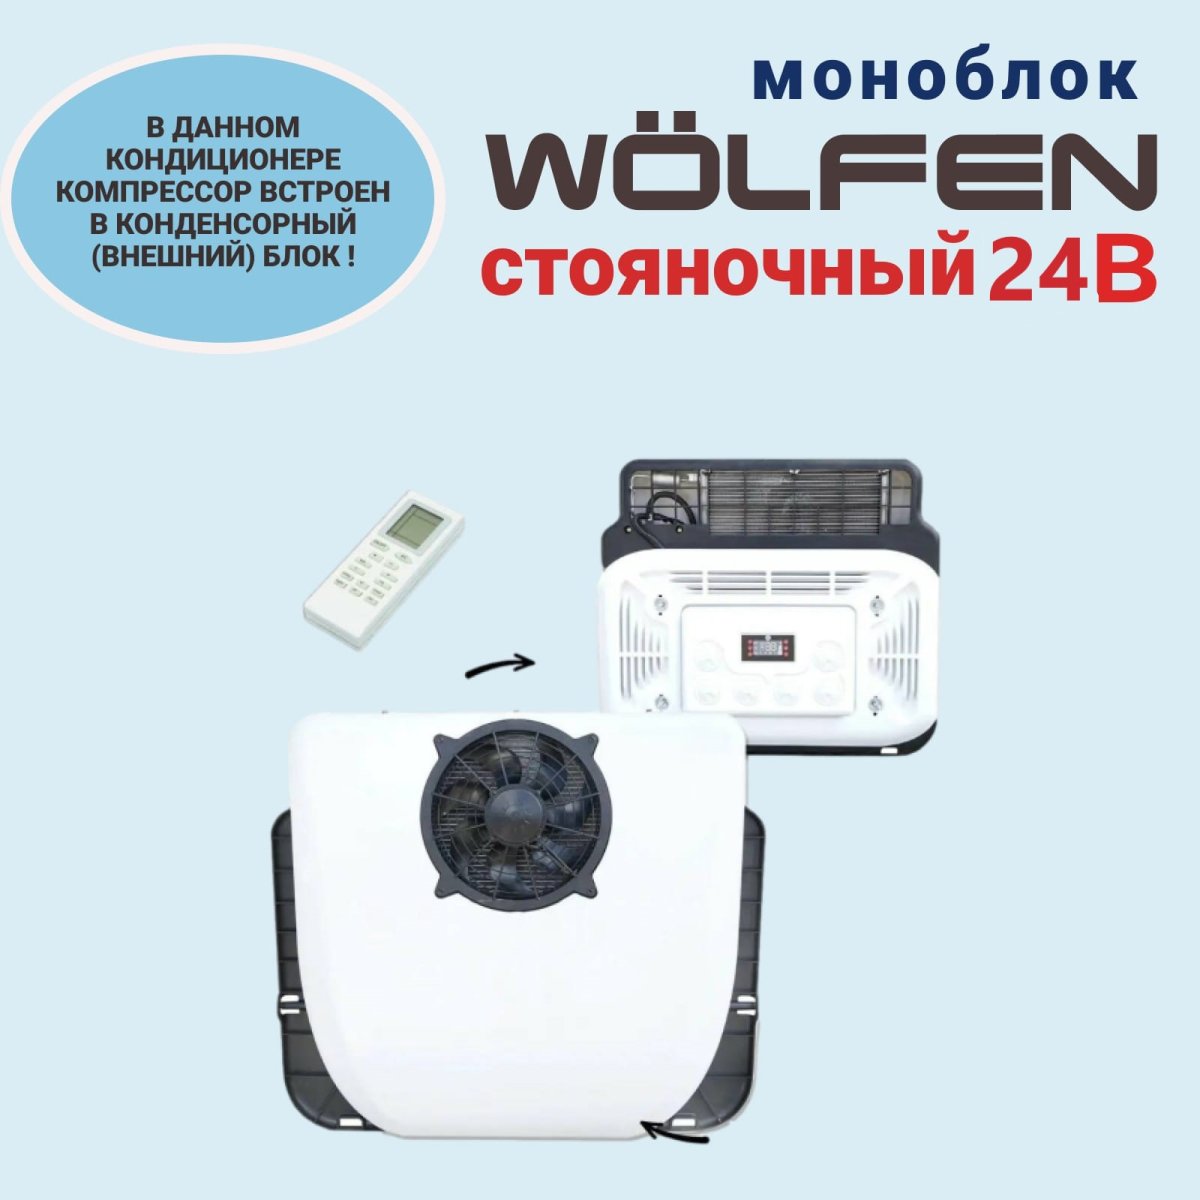 Автокондиционер МОНОБЛОК WÖLFen 24В купить в Новосибирске: цена,  характеристики, отзывы, фото